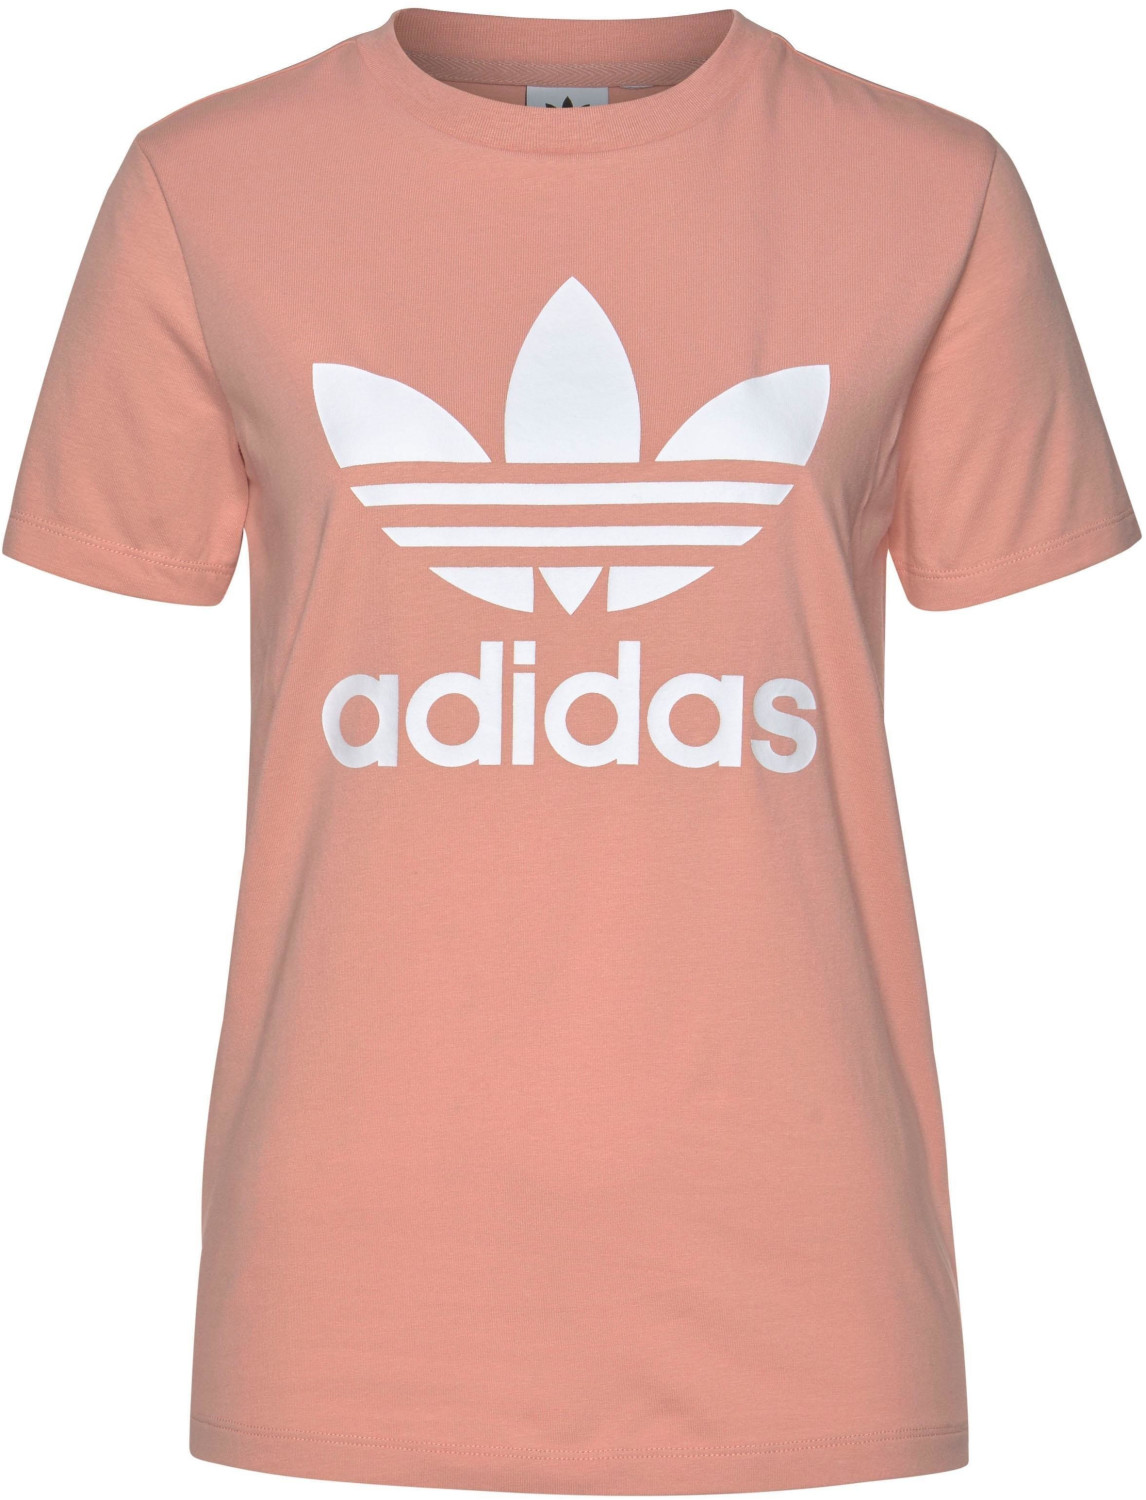 Adidas Originals Trefoil T-Shirt Damen dust pink